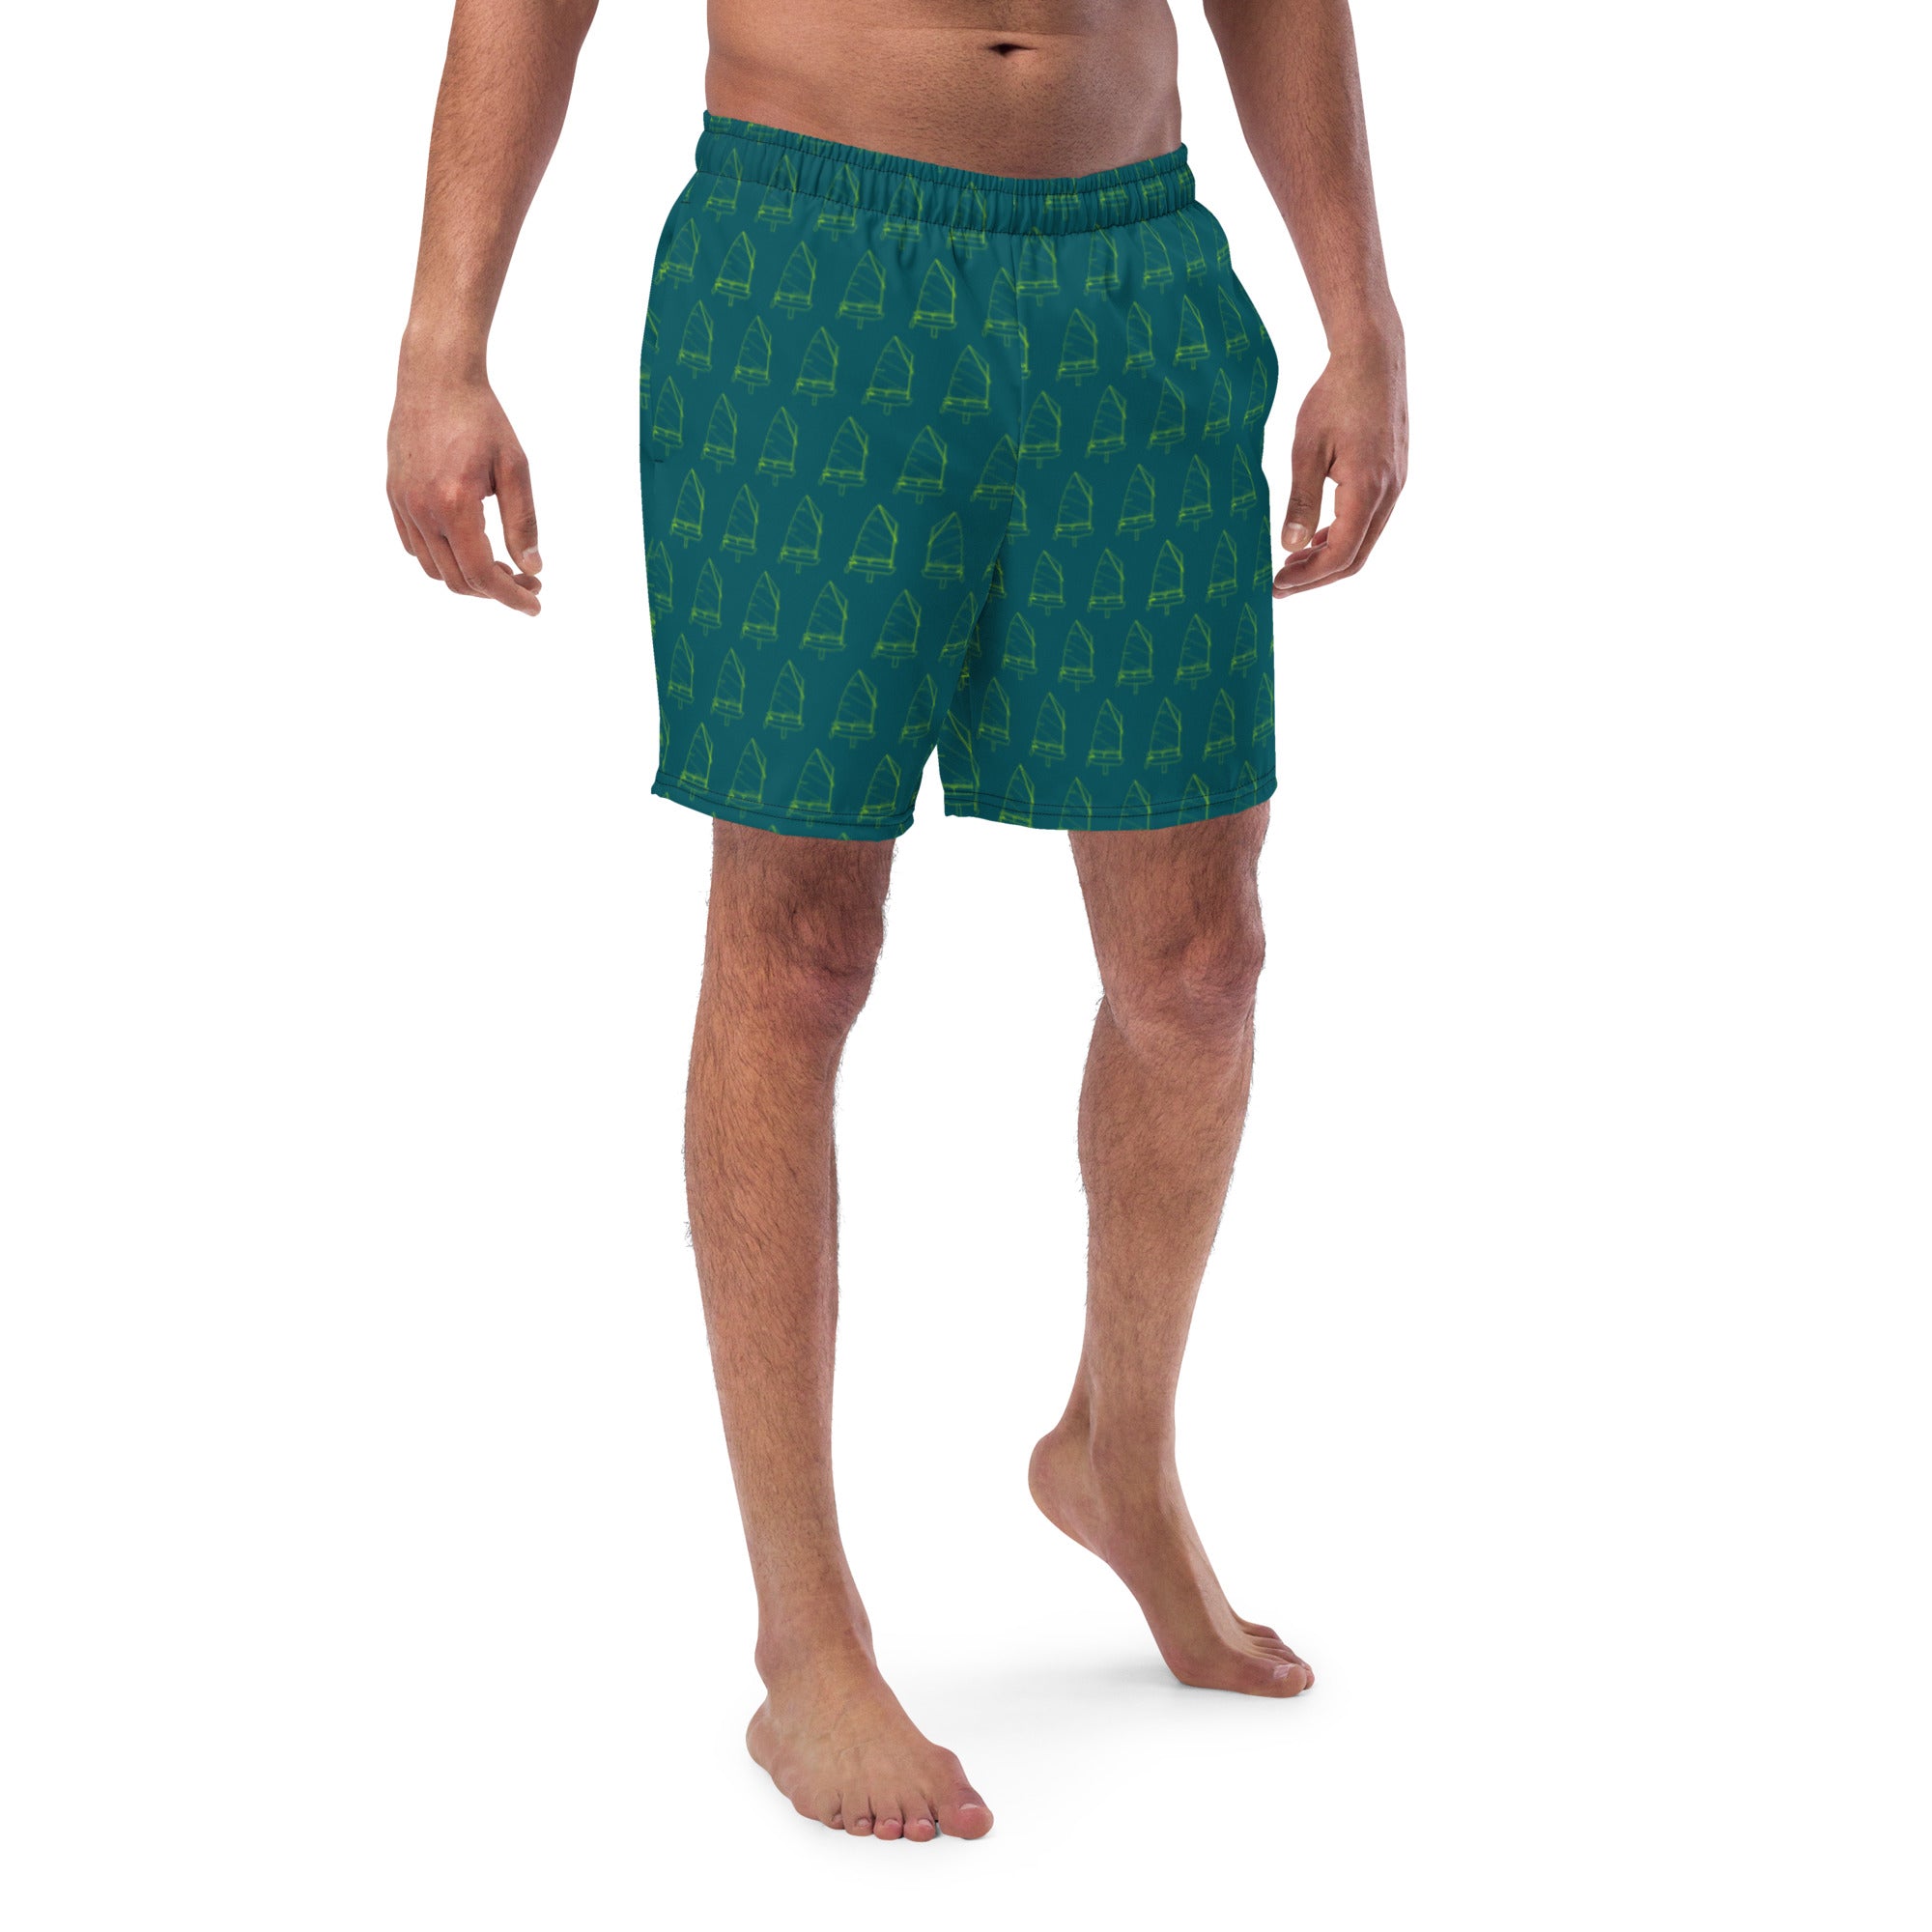 Optimist Men's swim trunks